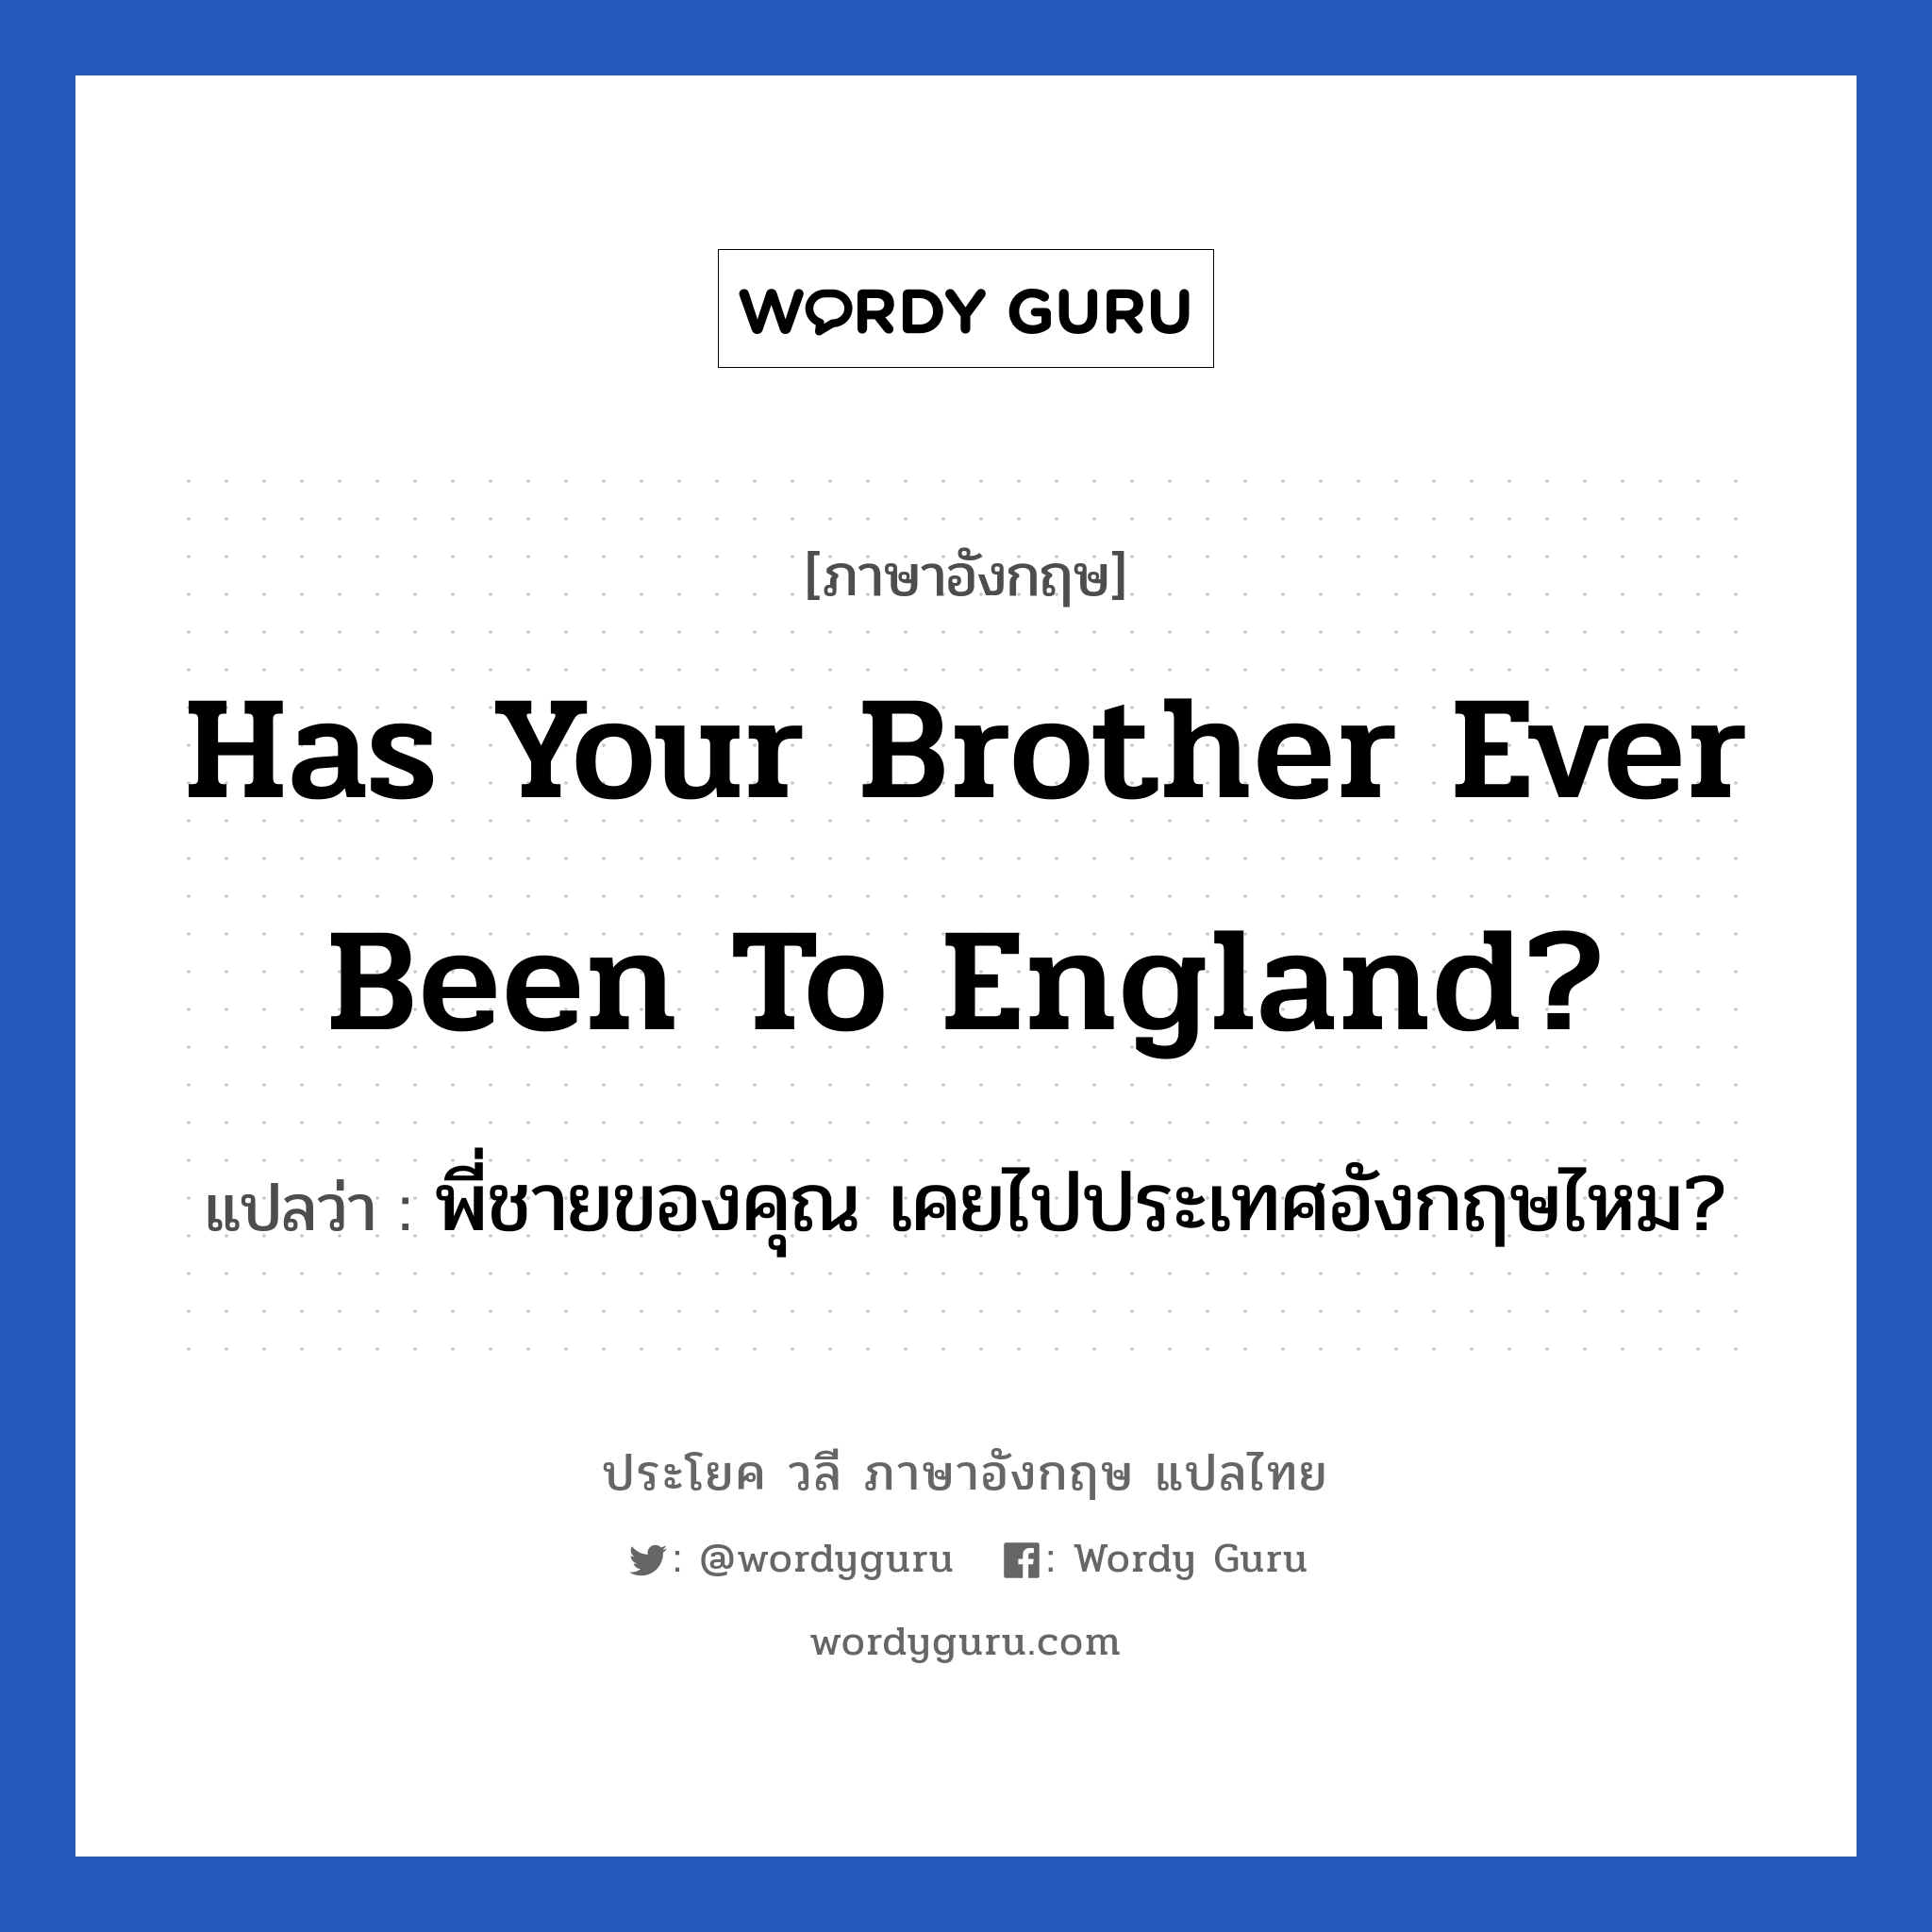 พี่ชายของคุณ เคยไปประเทศอังกฤษไหม? ภาษาอังกฤษ?, วลีภาษาอังกฤษ พี่ชายของคุณ เคยไปประเทศอังกฤษไหม? แปลว่า Has your brother ever been to England?